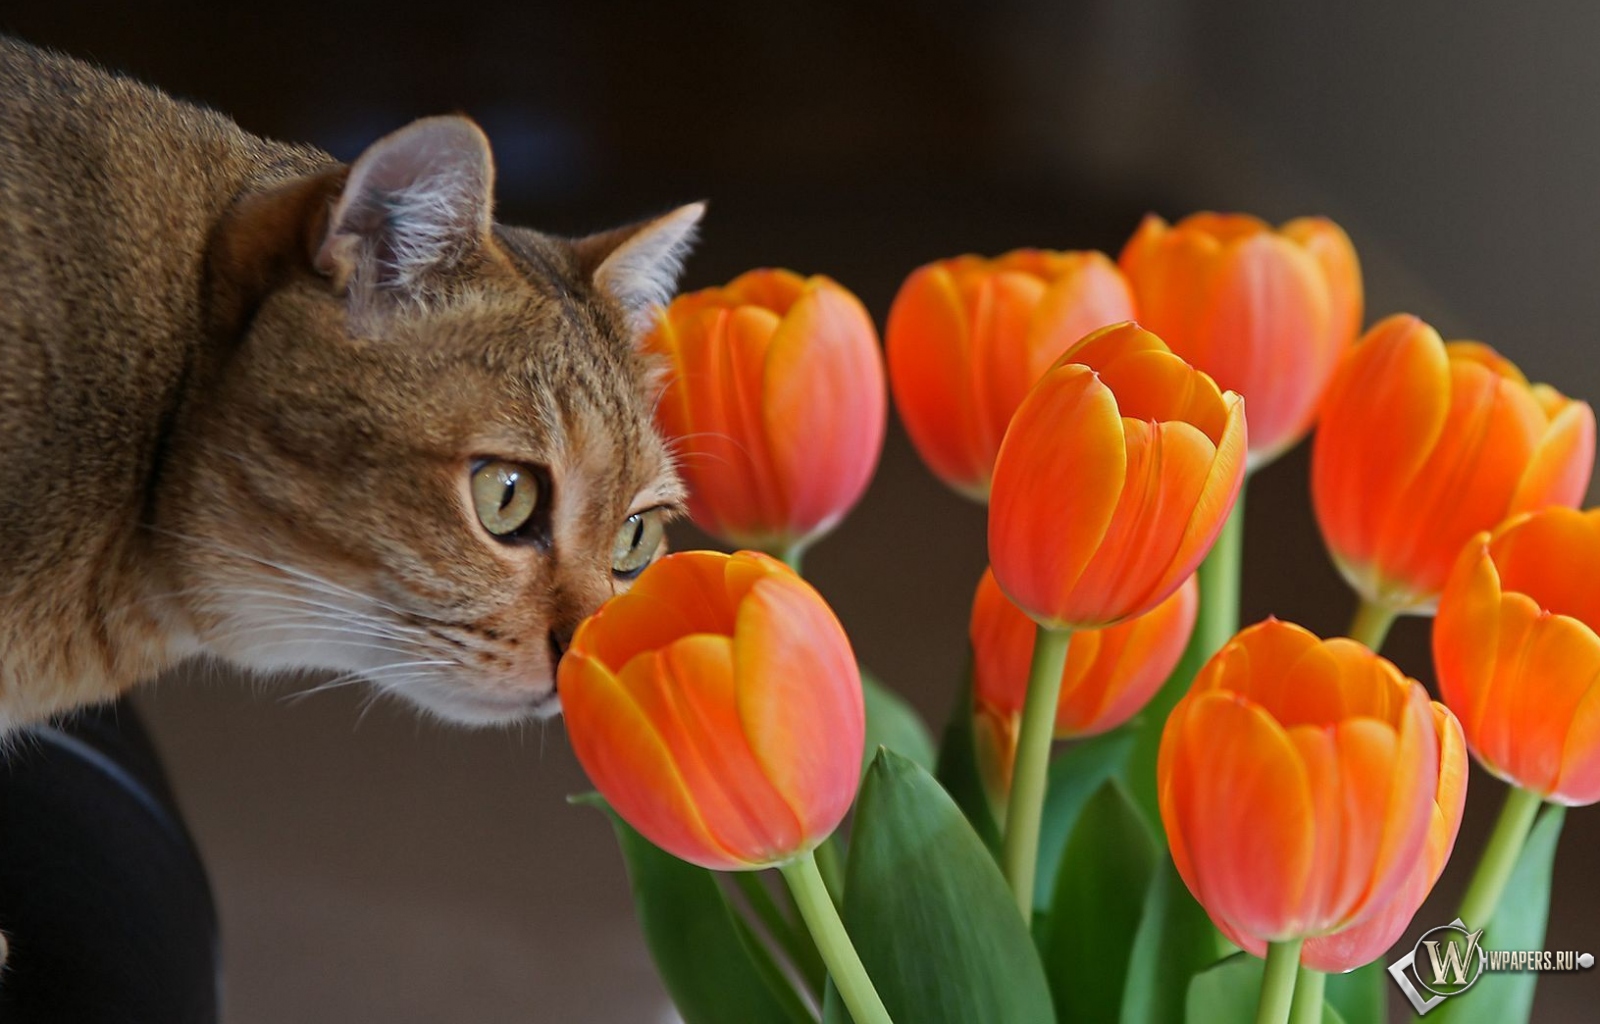 Кот с оранжевыми тюльпанами 1600x1024